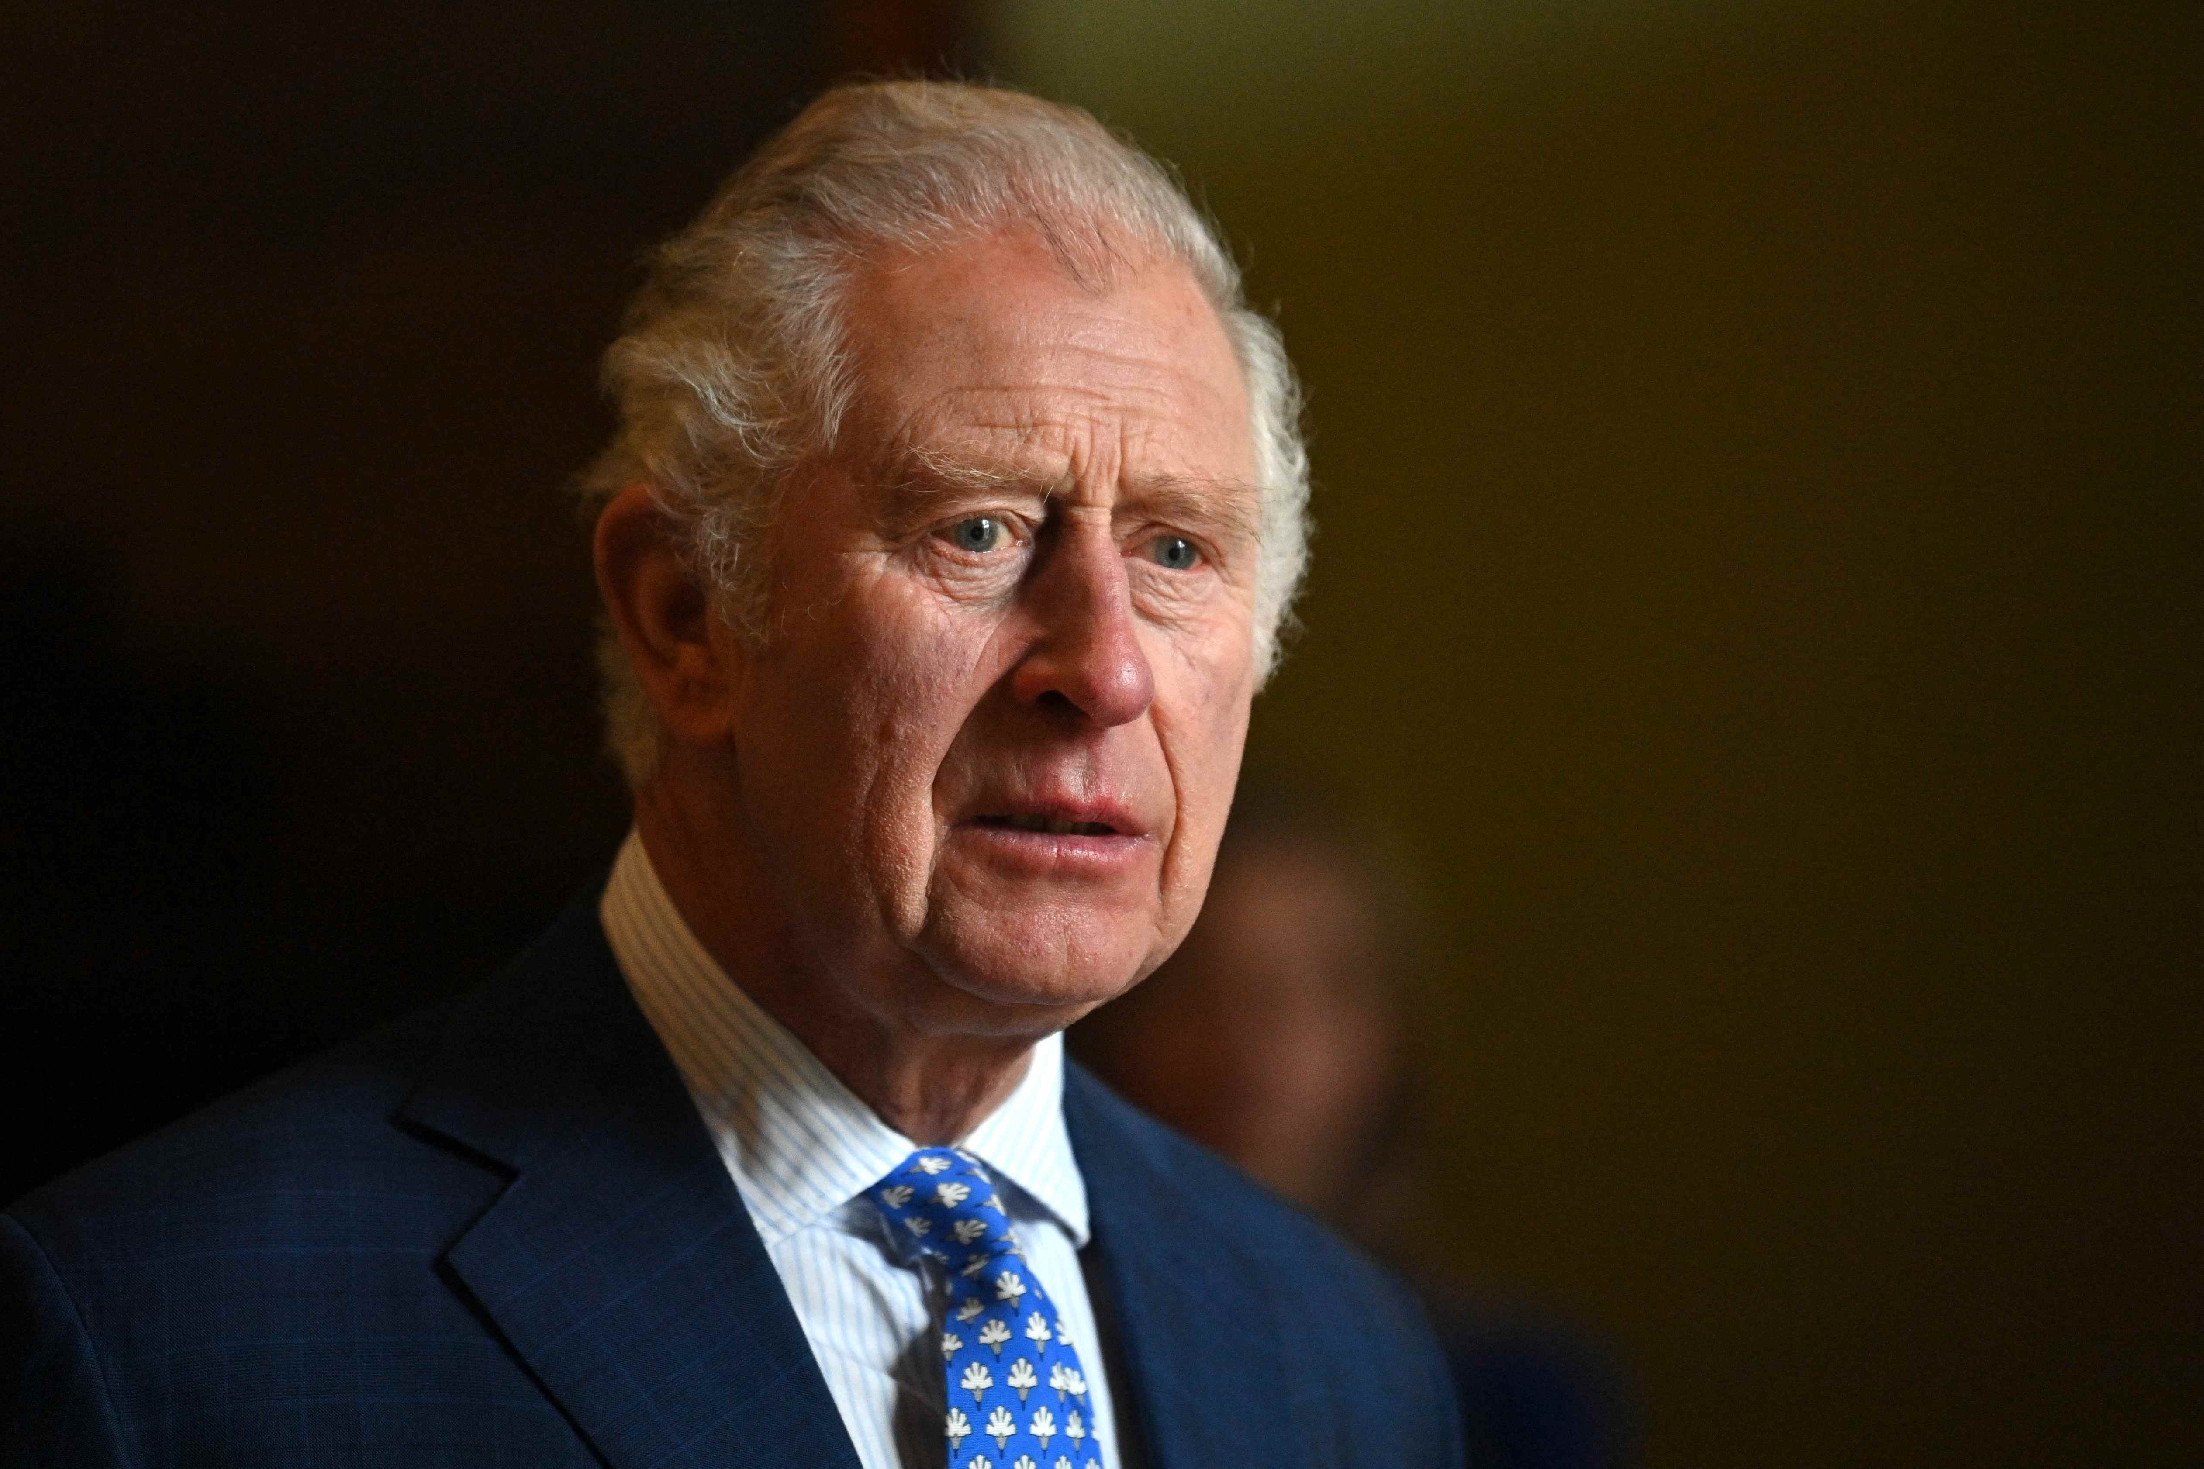 Botrány a brit királyi családban: Károly herceg tanácsadója egy pedofil szexuális bűnöző volt